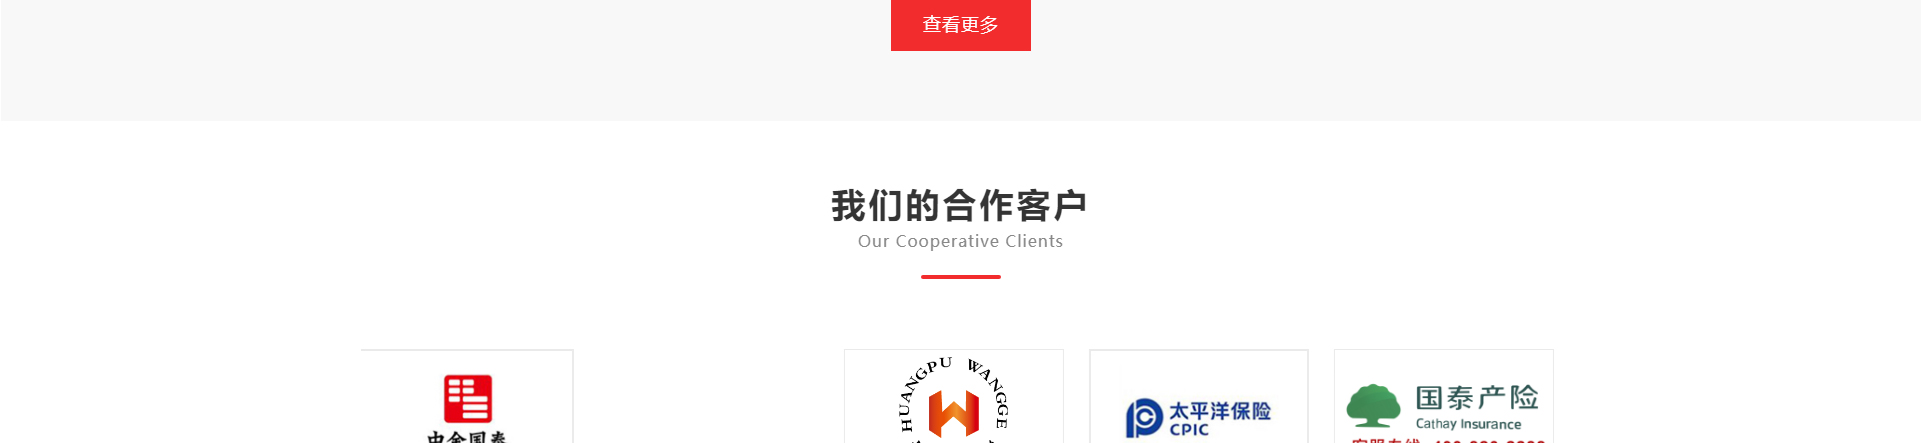 广州萍涛传媒科技有限公司_企业官网案例